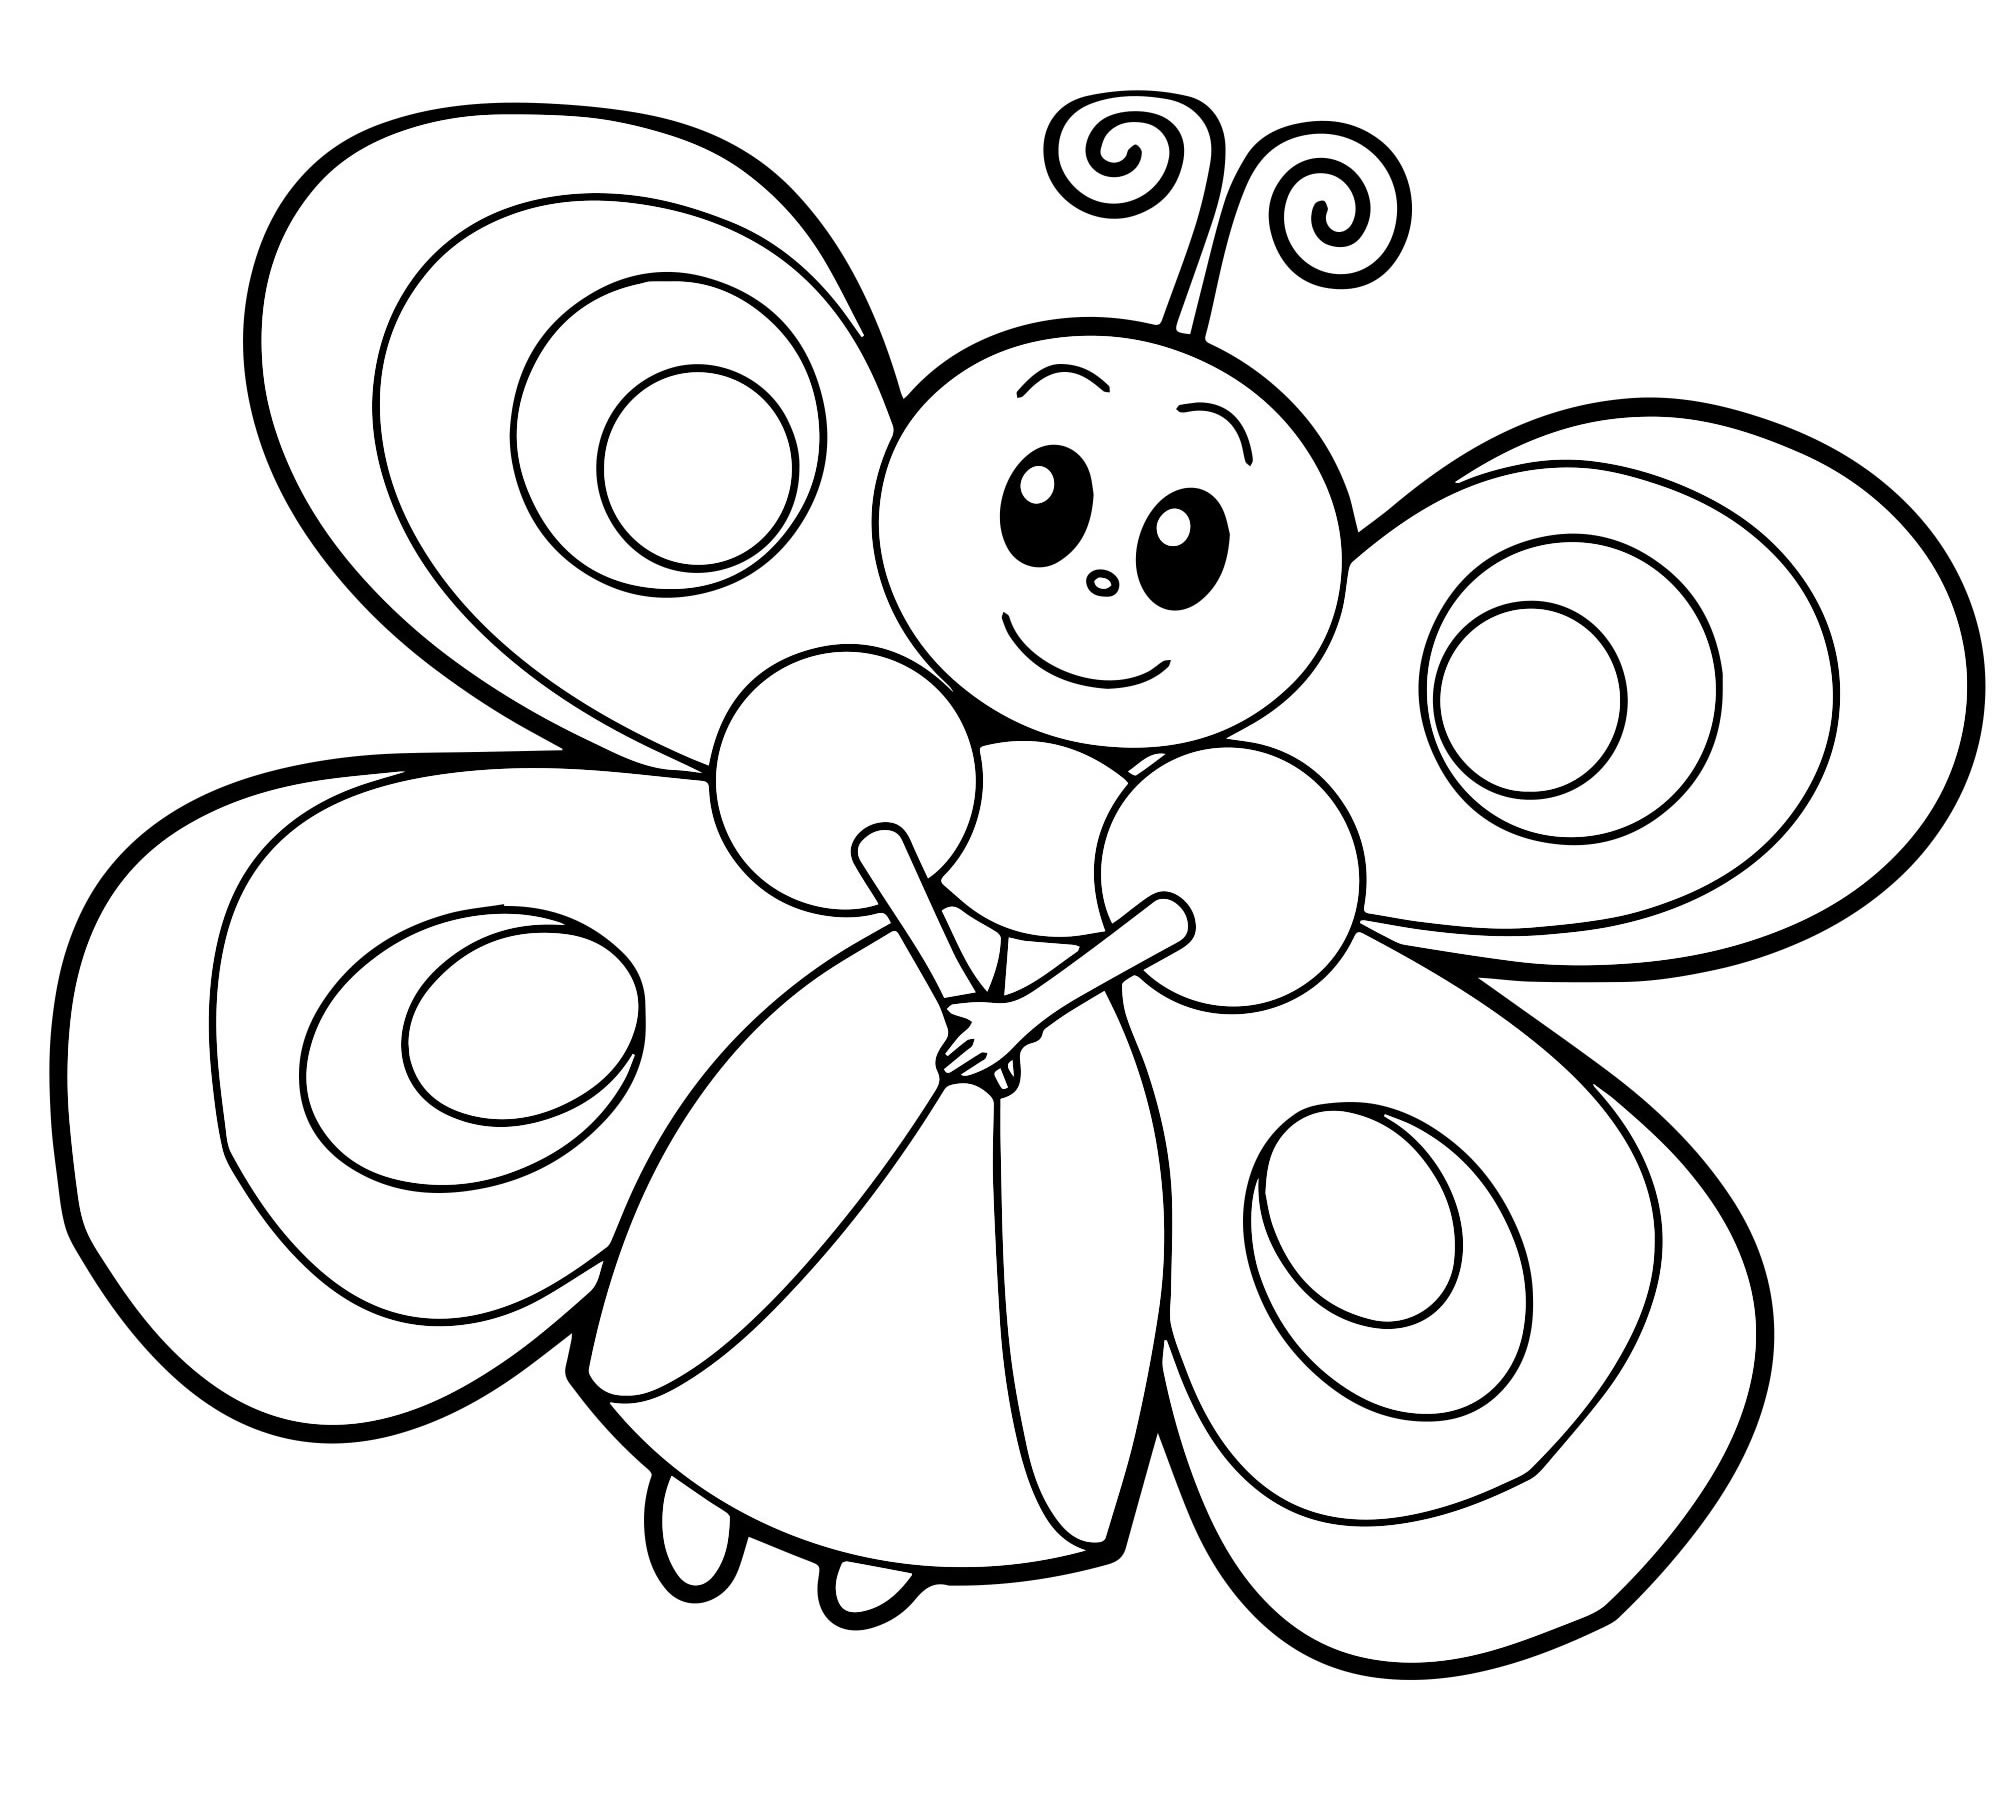 Раскраска симбочка распечатать. Бабочка раскраска для детей. Бабочка раскраска для малышей. Раскраска для девочек бабочки. Детские раскраски бабочки.